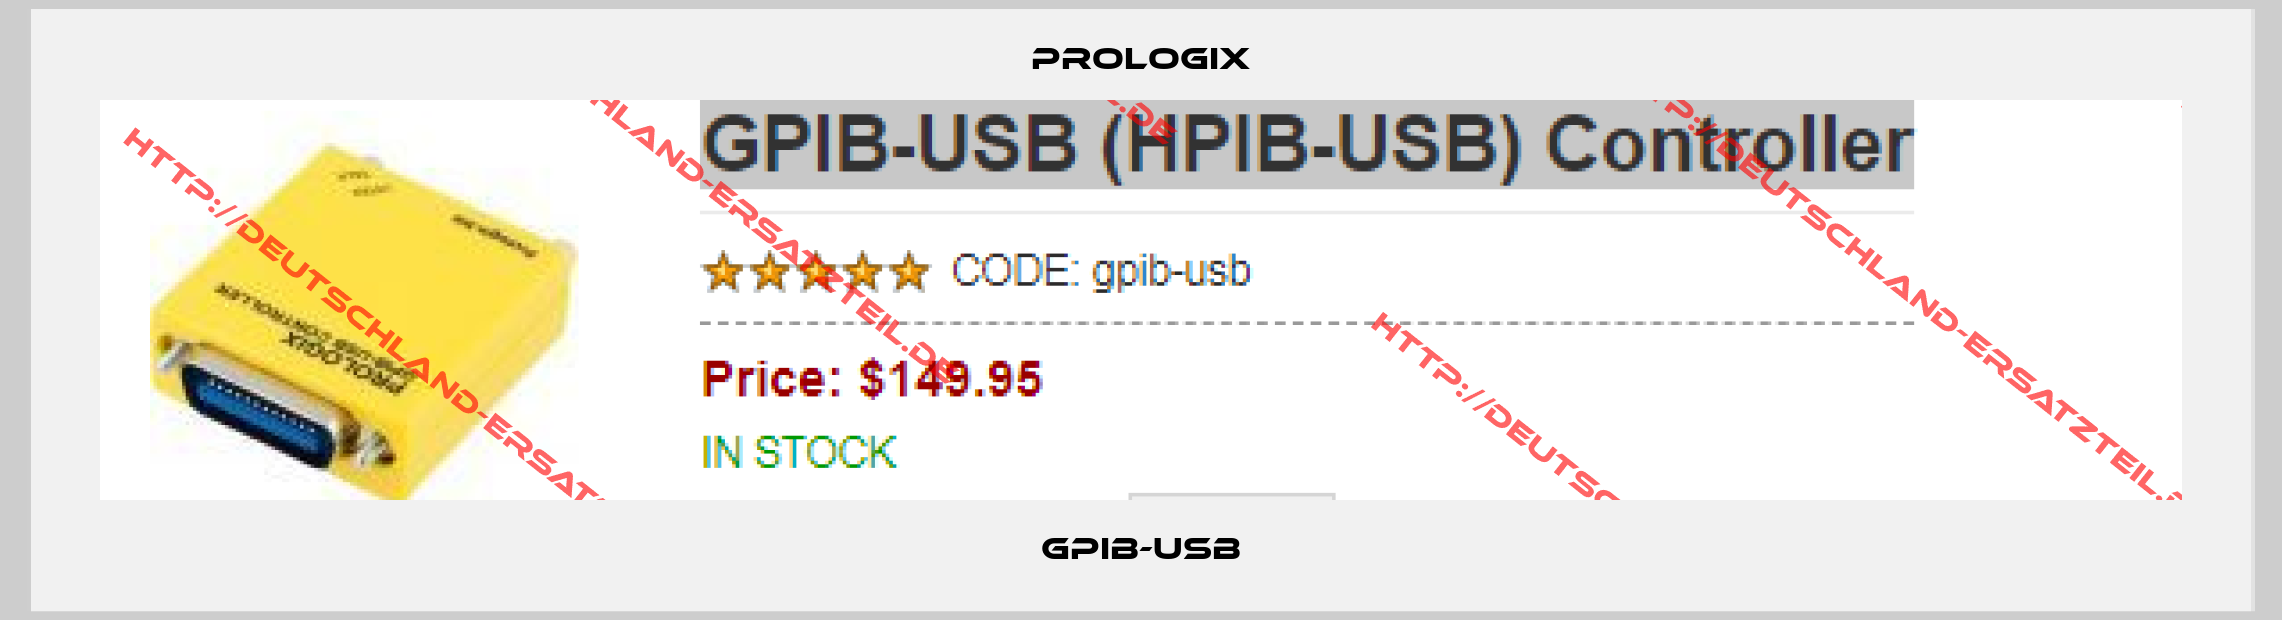 Prologix-gpib-usb